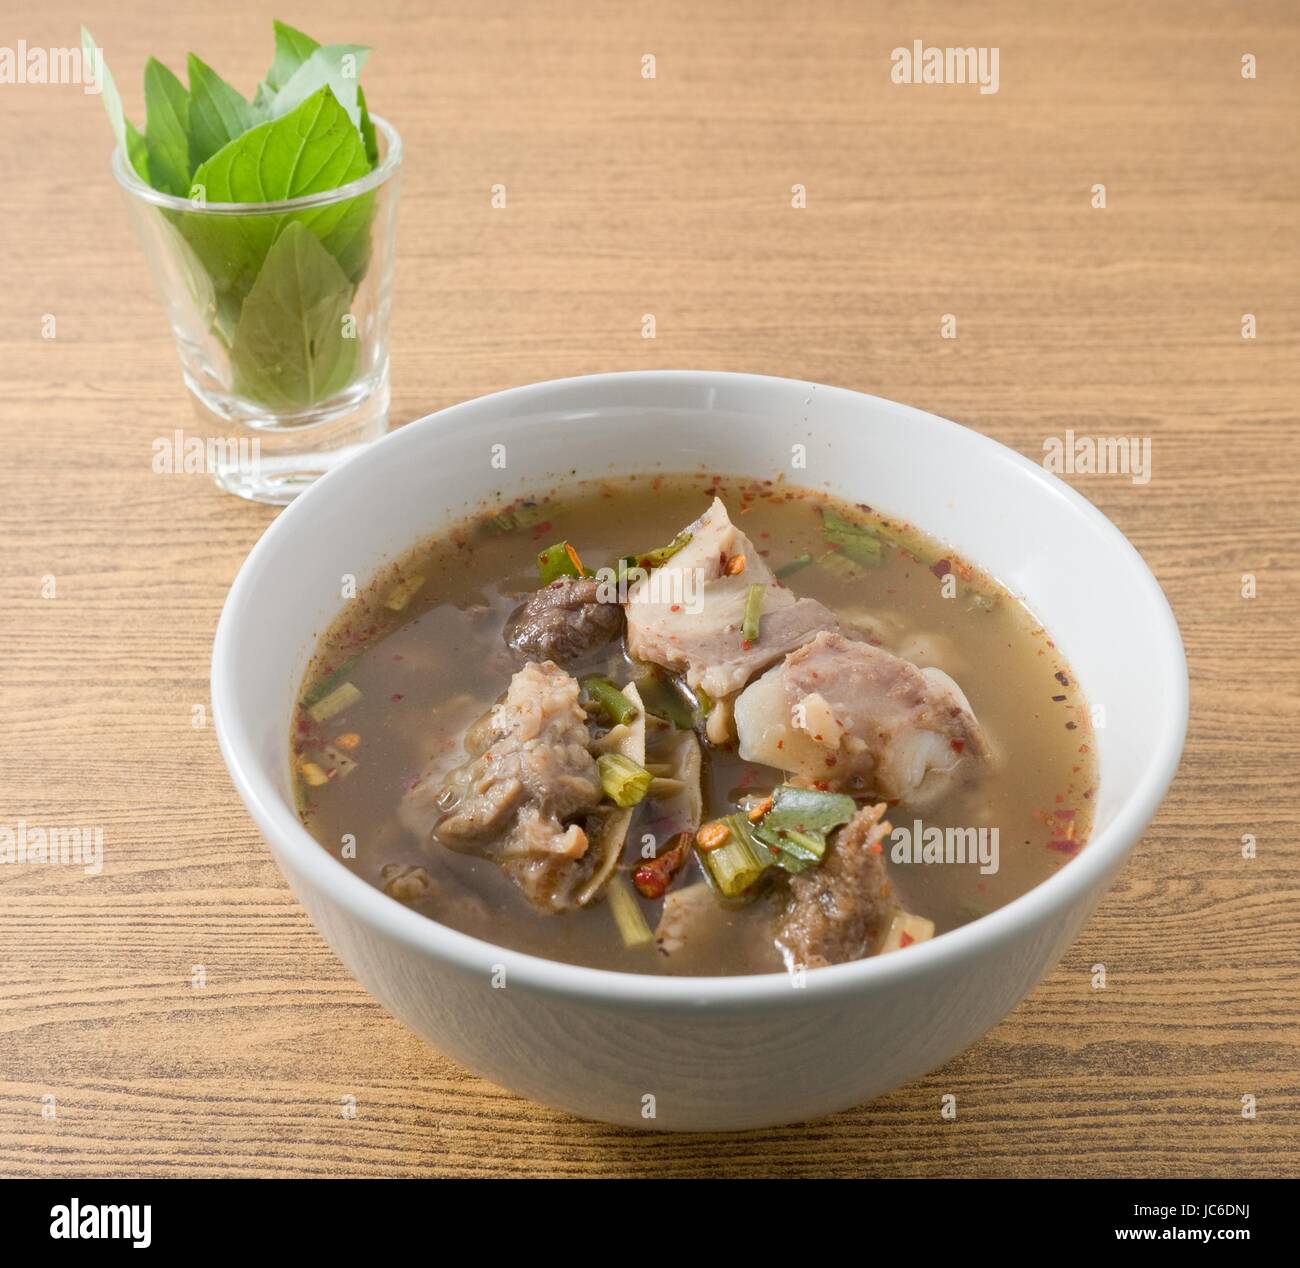 Cucina tailandese e cibo, una ciotola di deliziosi piatti Thai piccante chiara e calda zuppa acida con le interiora dei bovini. Foto Stock